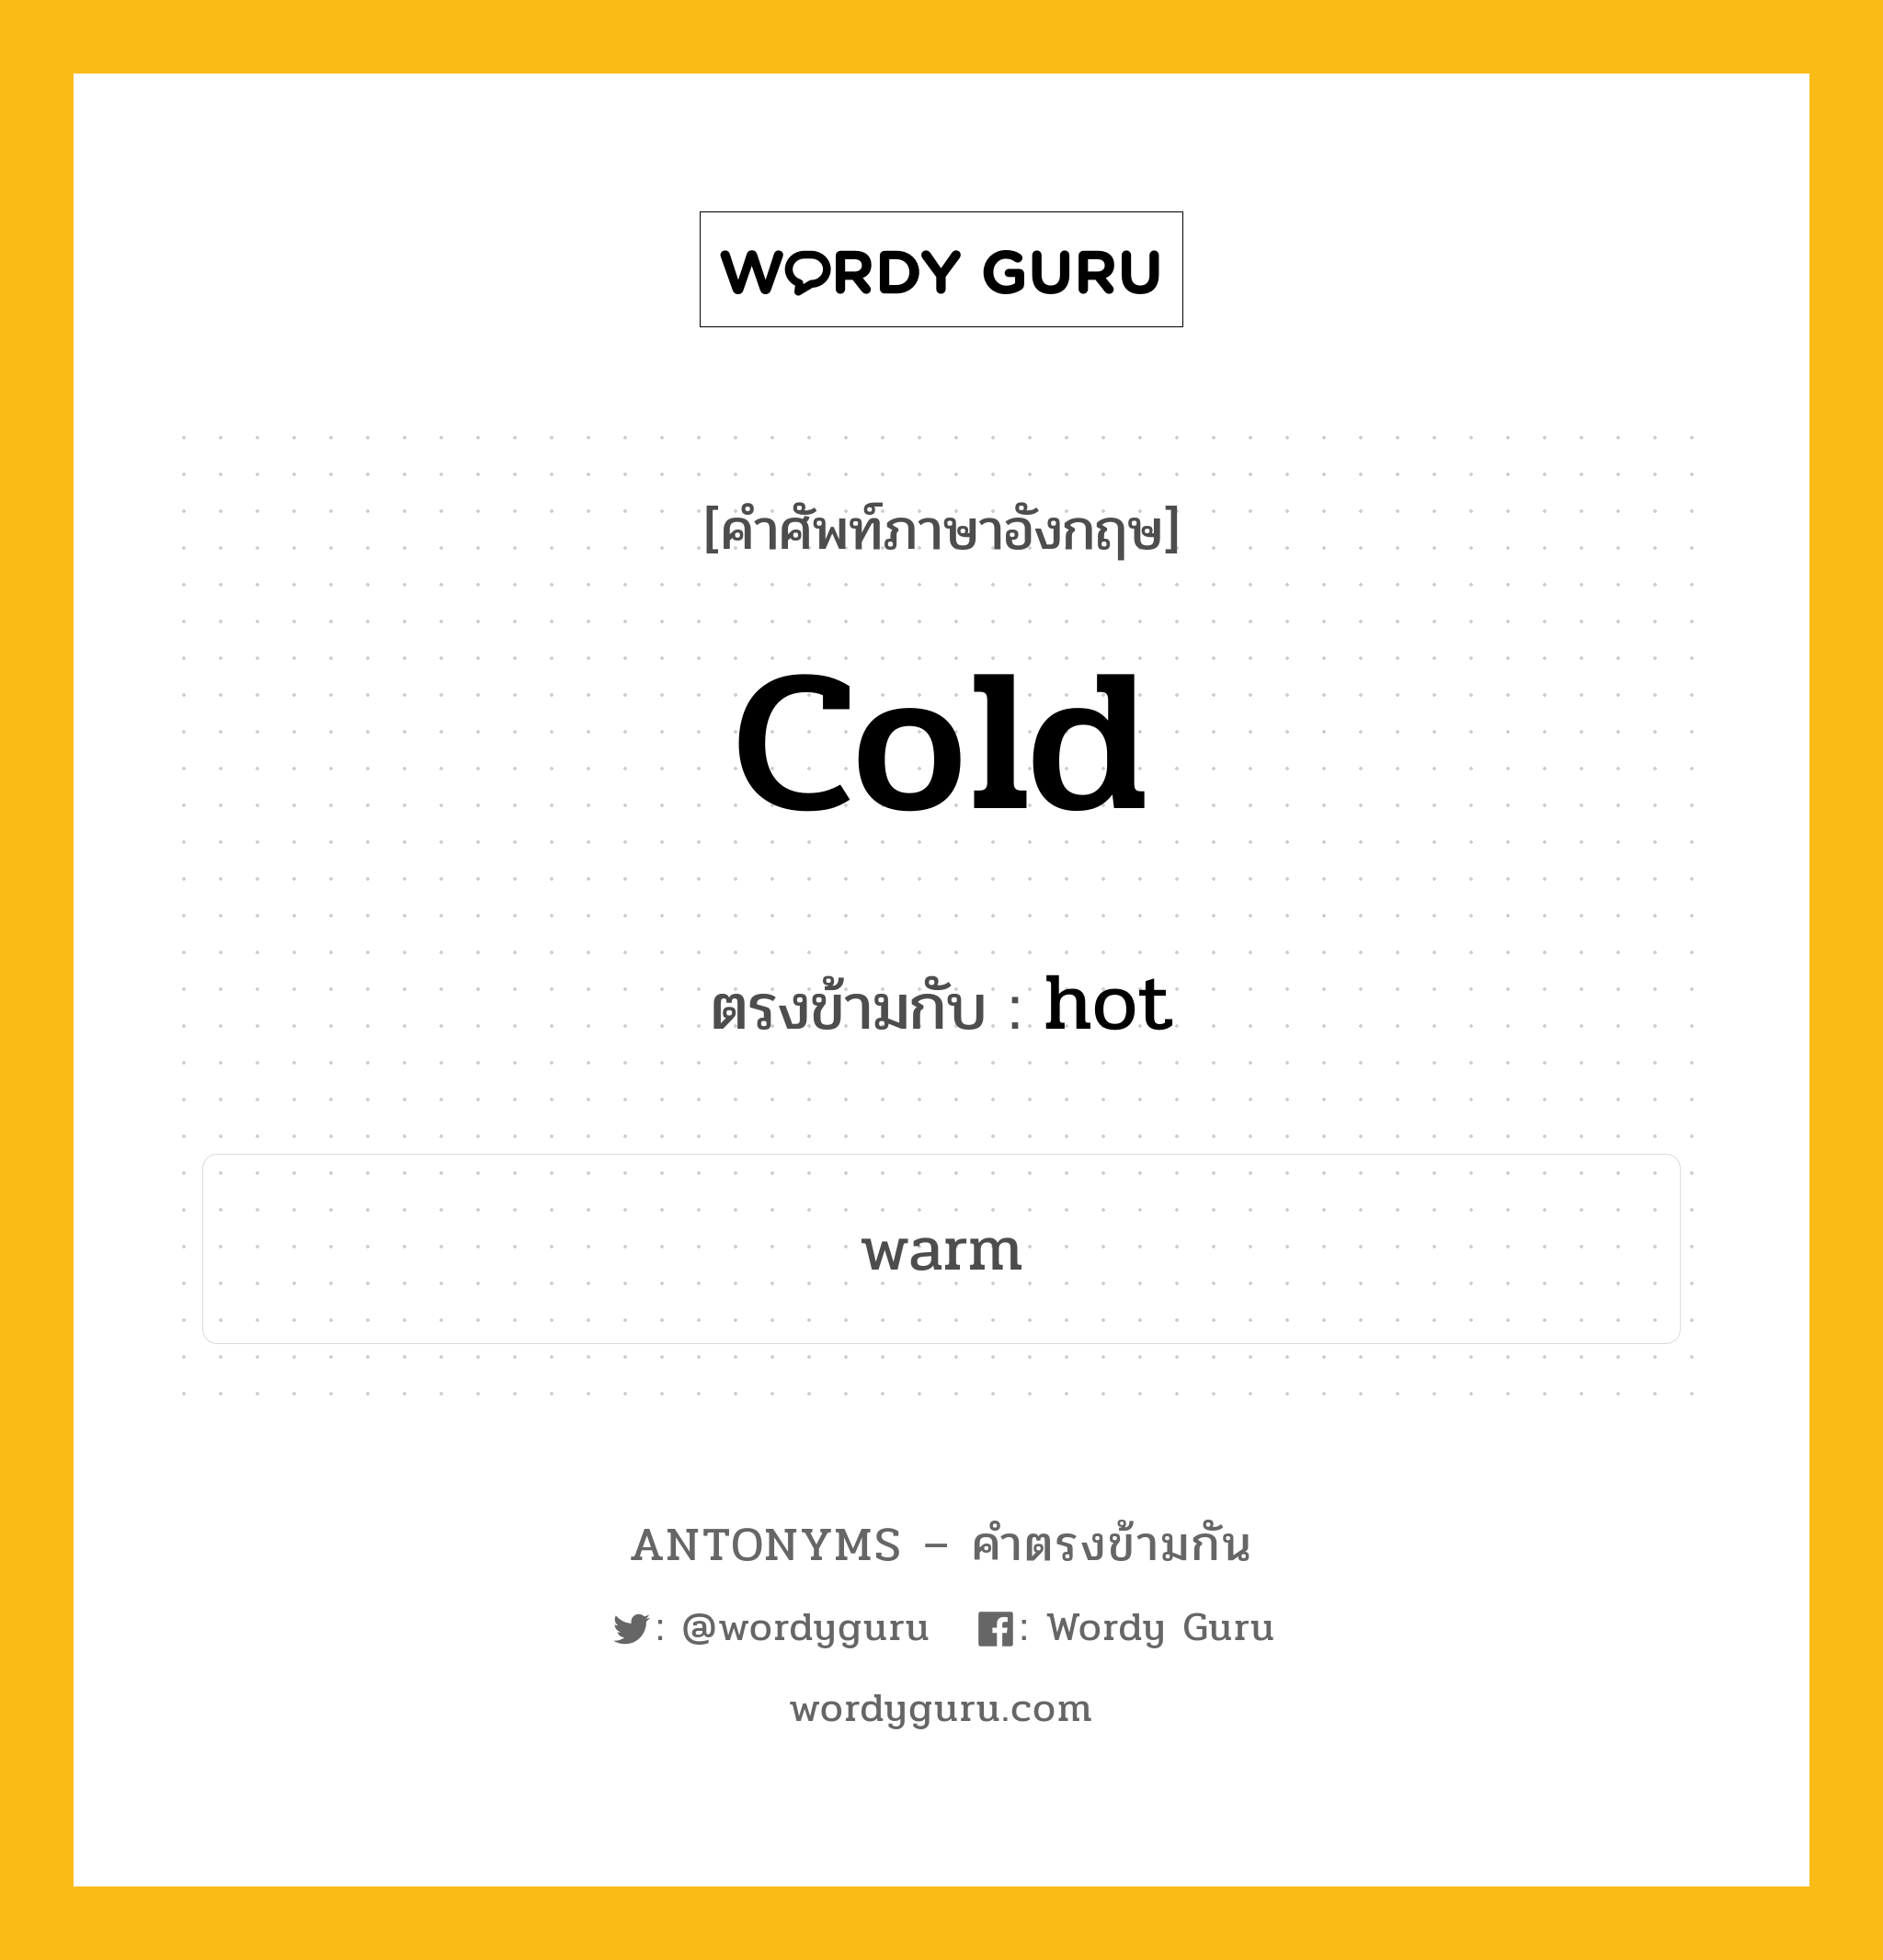 cold เป็นคำตรงข้ามกับคำไหนบ้าง?, คำศัพท์ภาษาอังกฤษ cold ตรงข้ามกับ hot หมวด hot